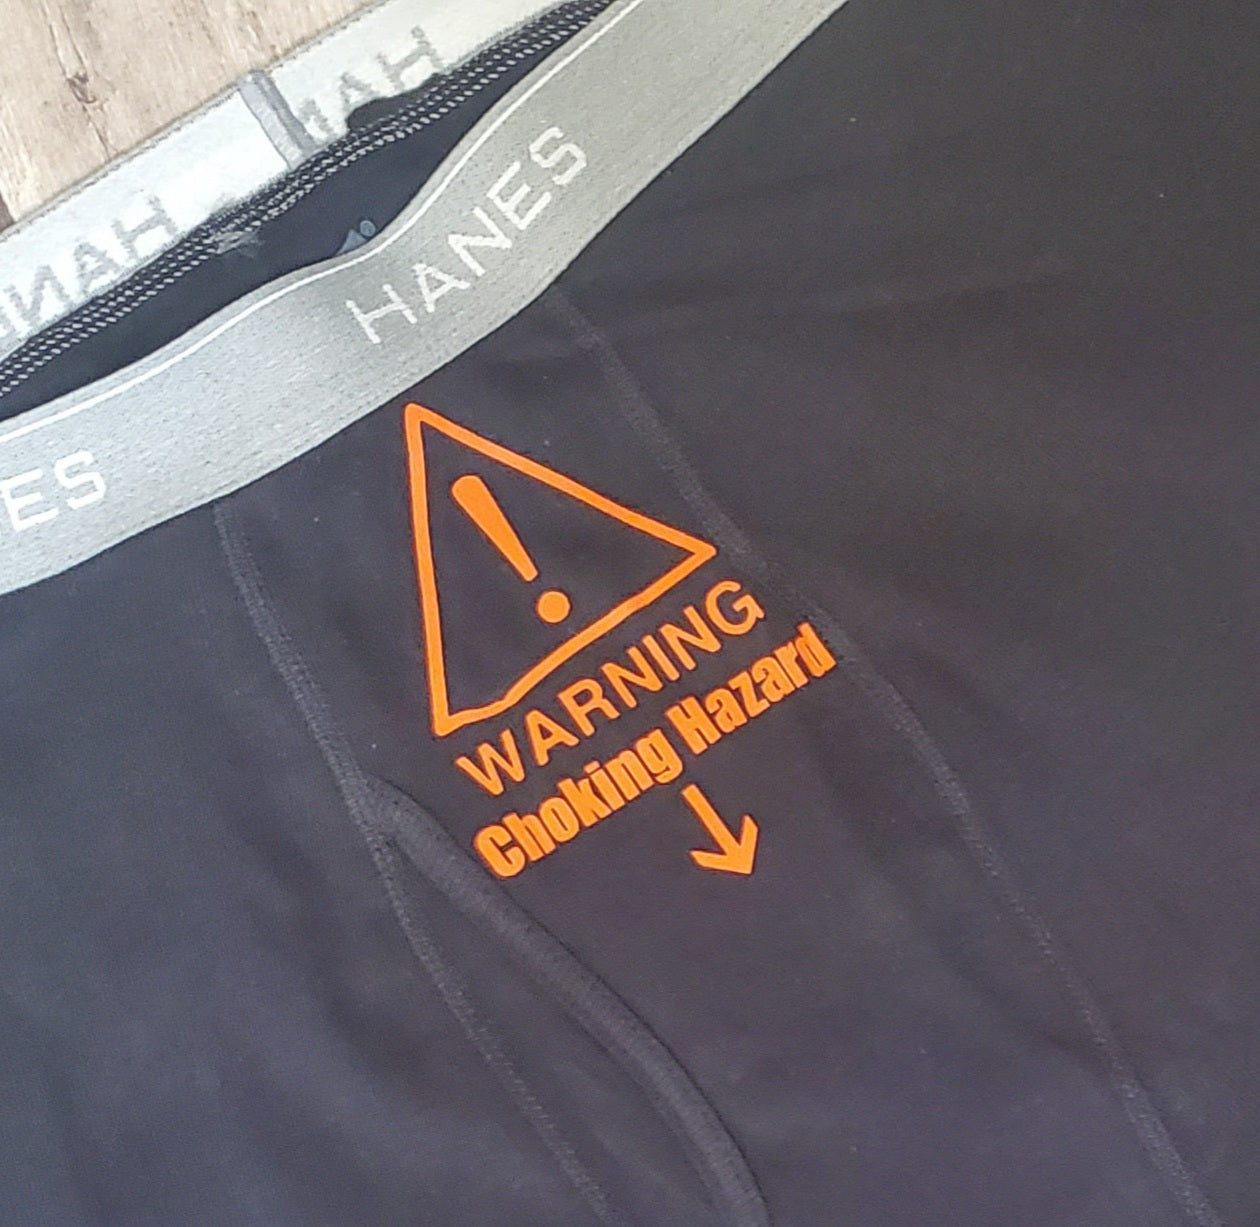 Men Briefs Underwear Choking Hazard